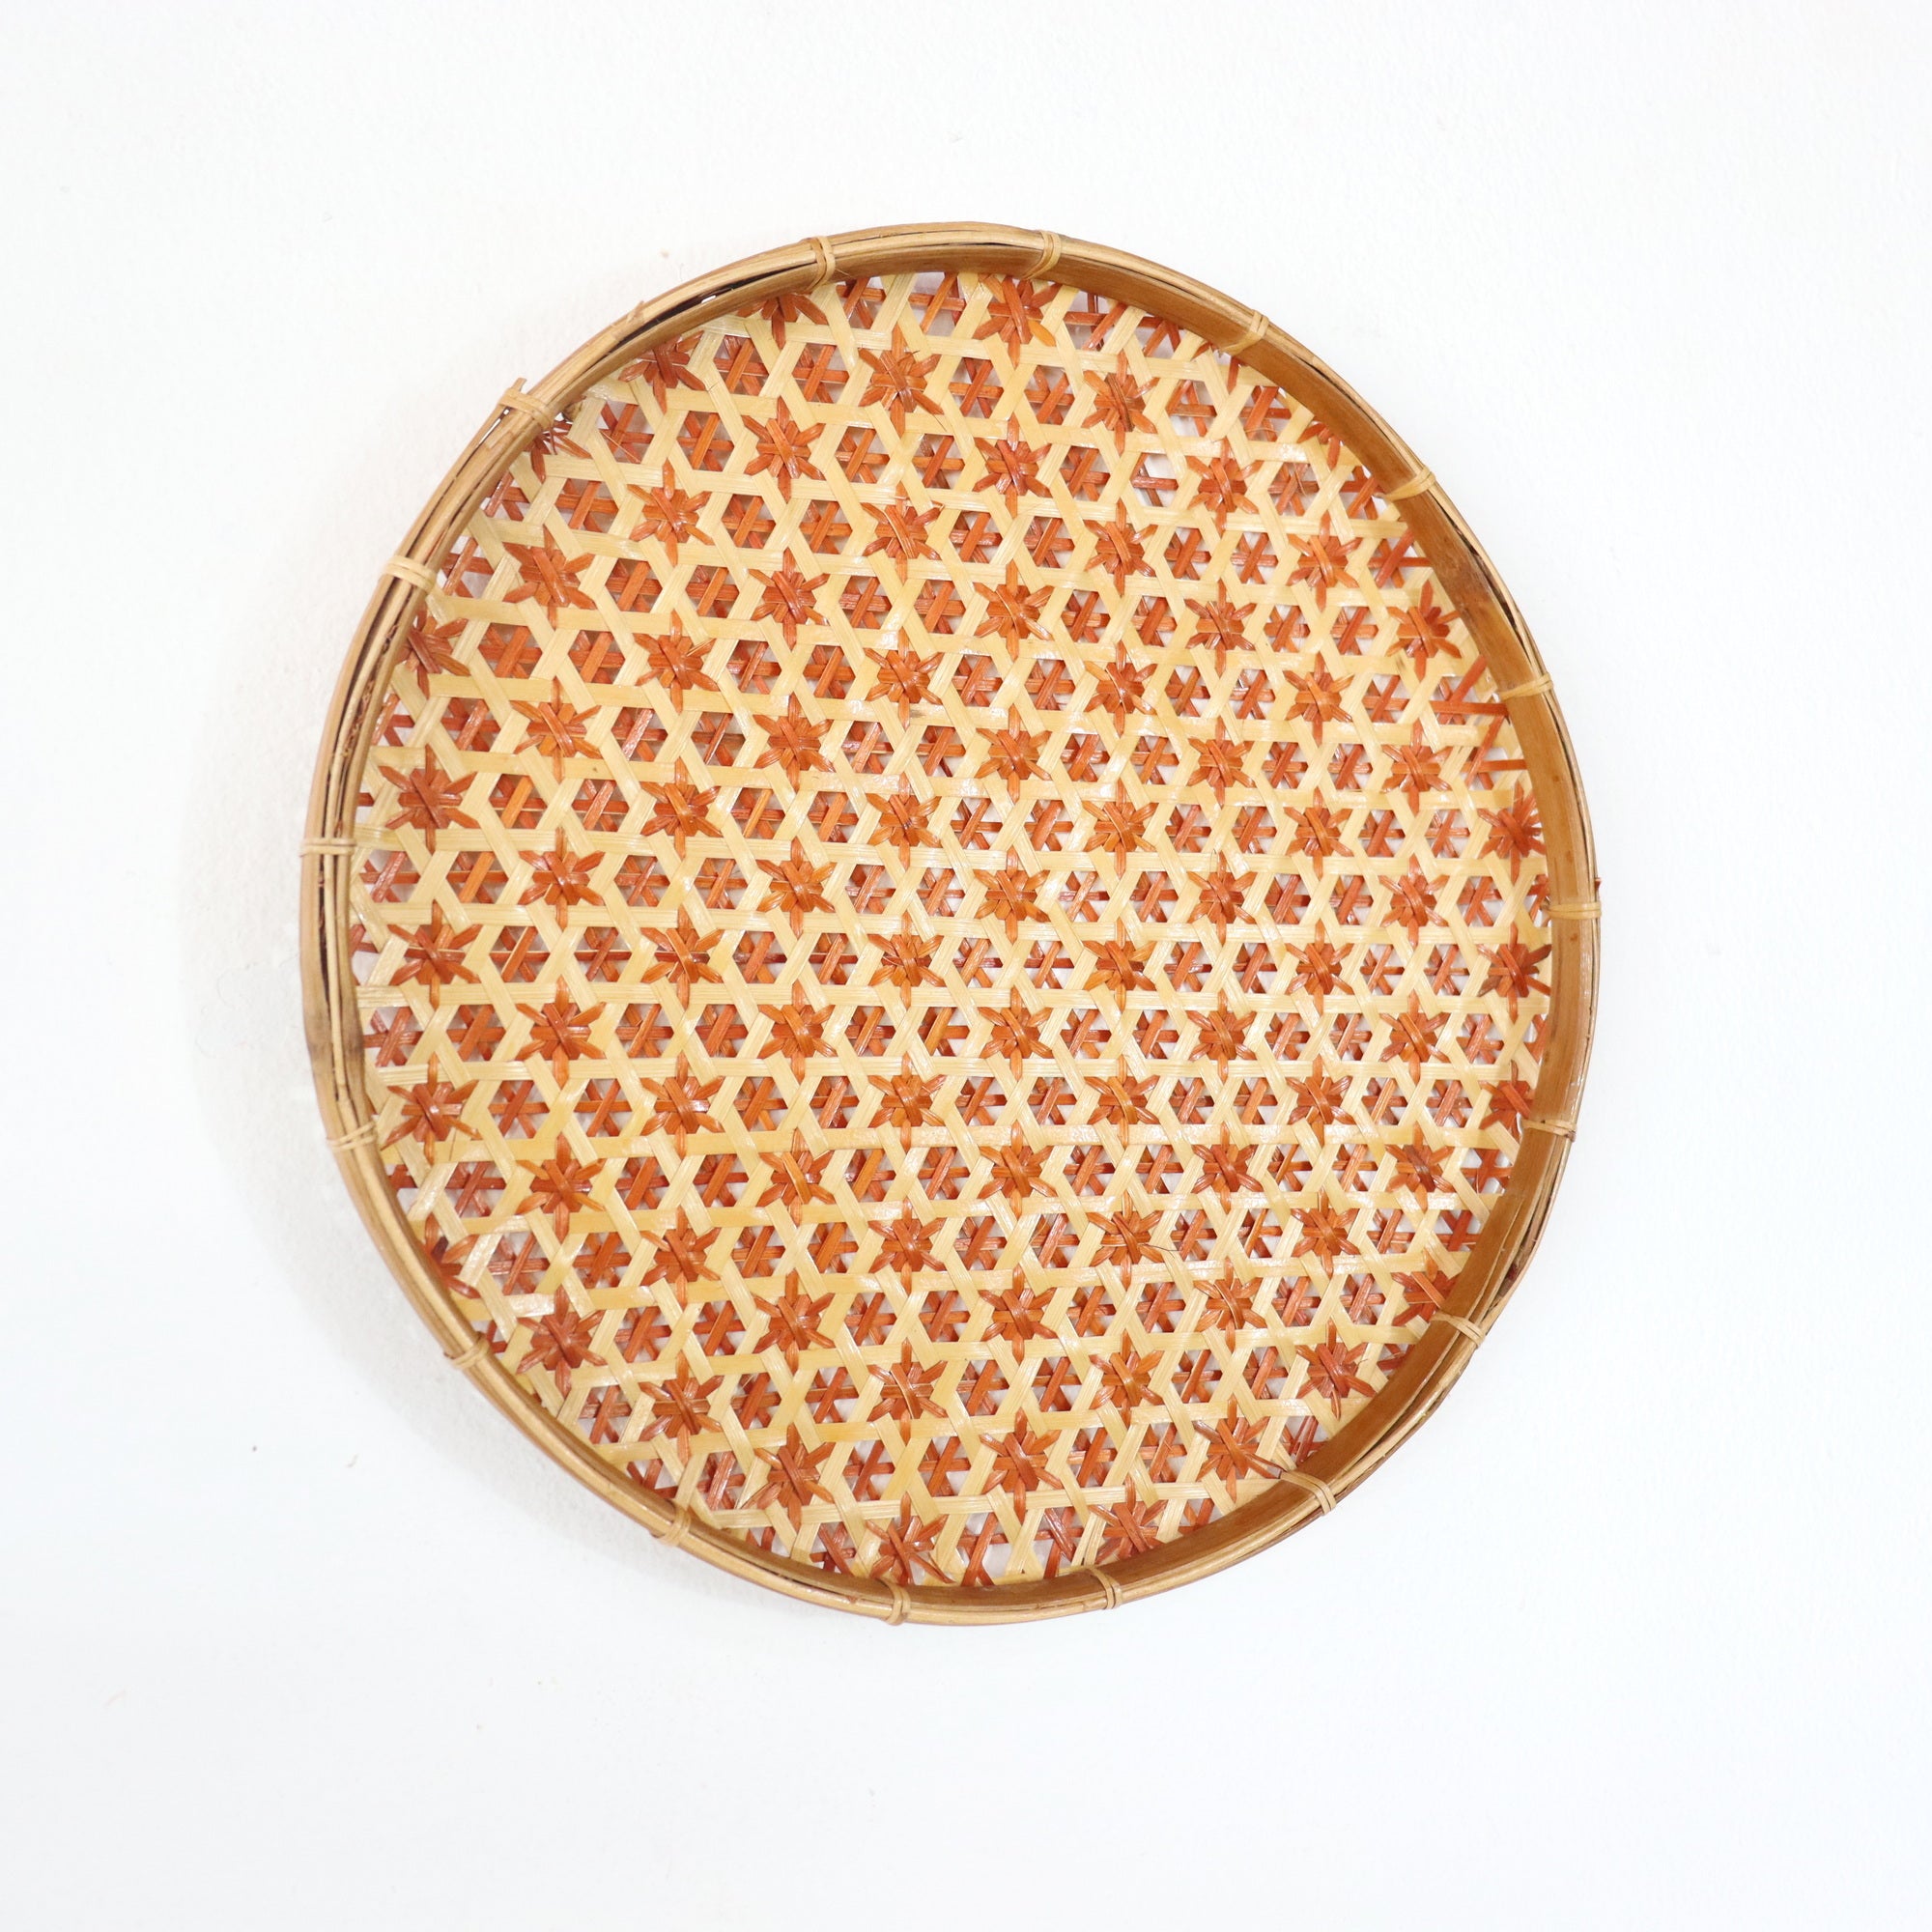 MON NA PA - DIY Wall Art Basket Decor 13 inches